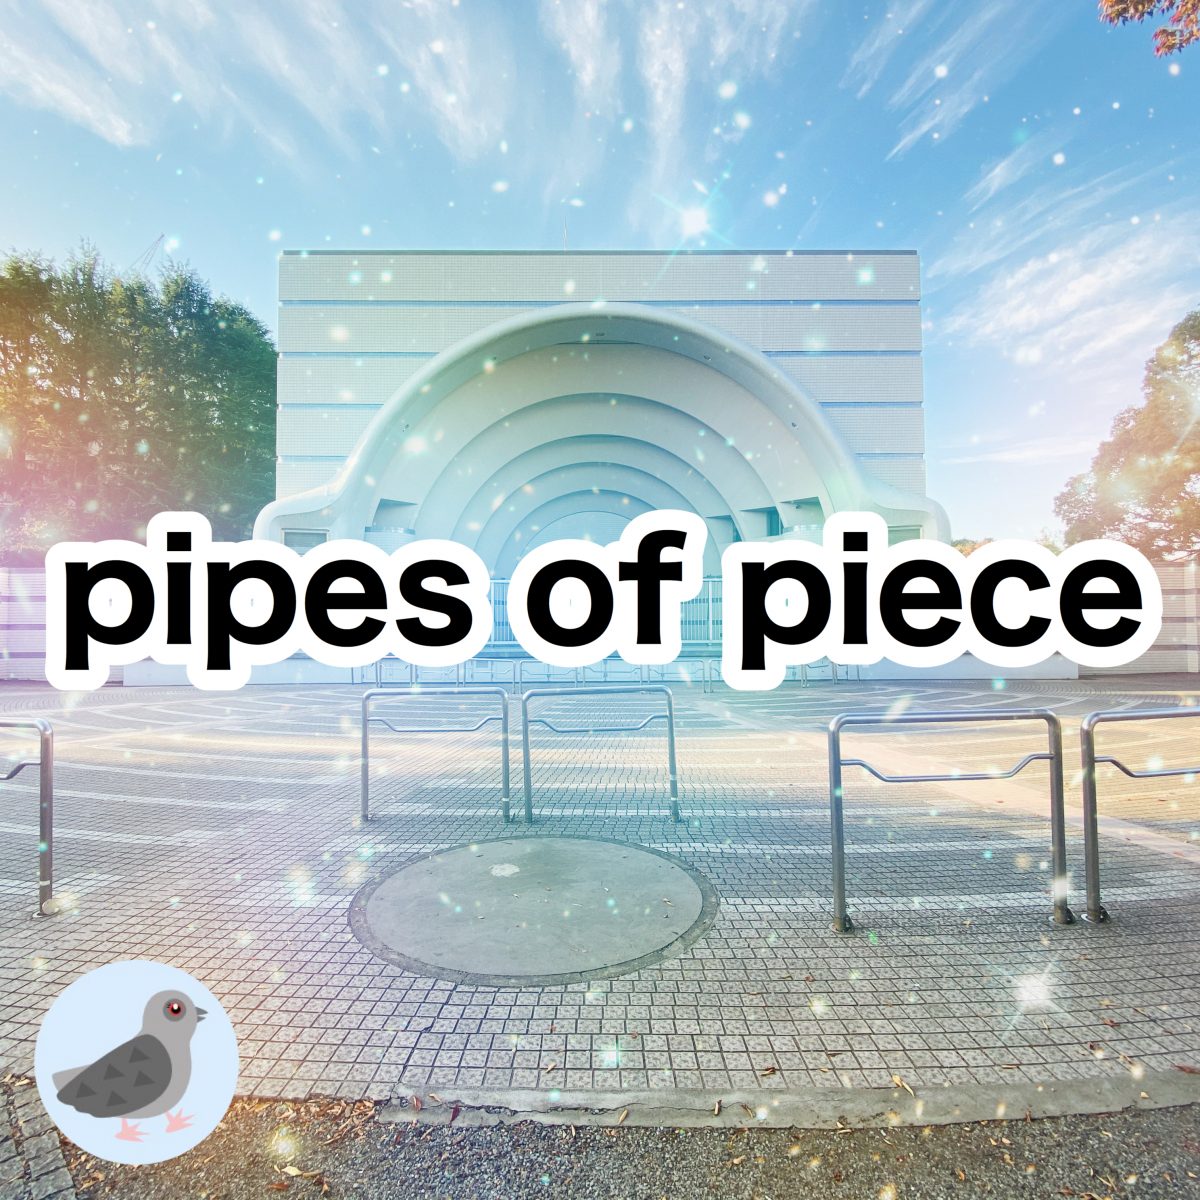 代々木公園野外音楽堂ライブイベント pipes of piece vol.53